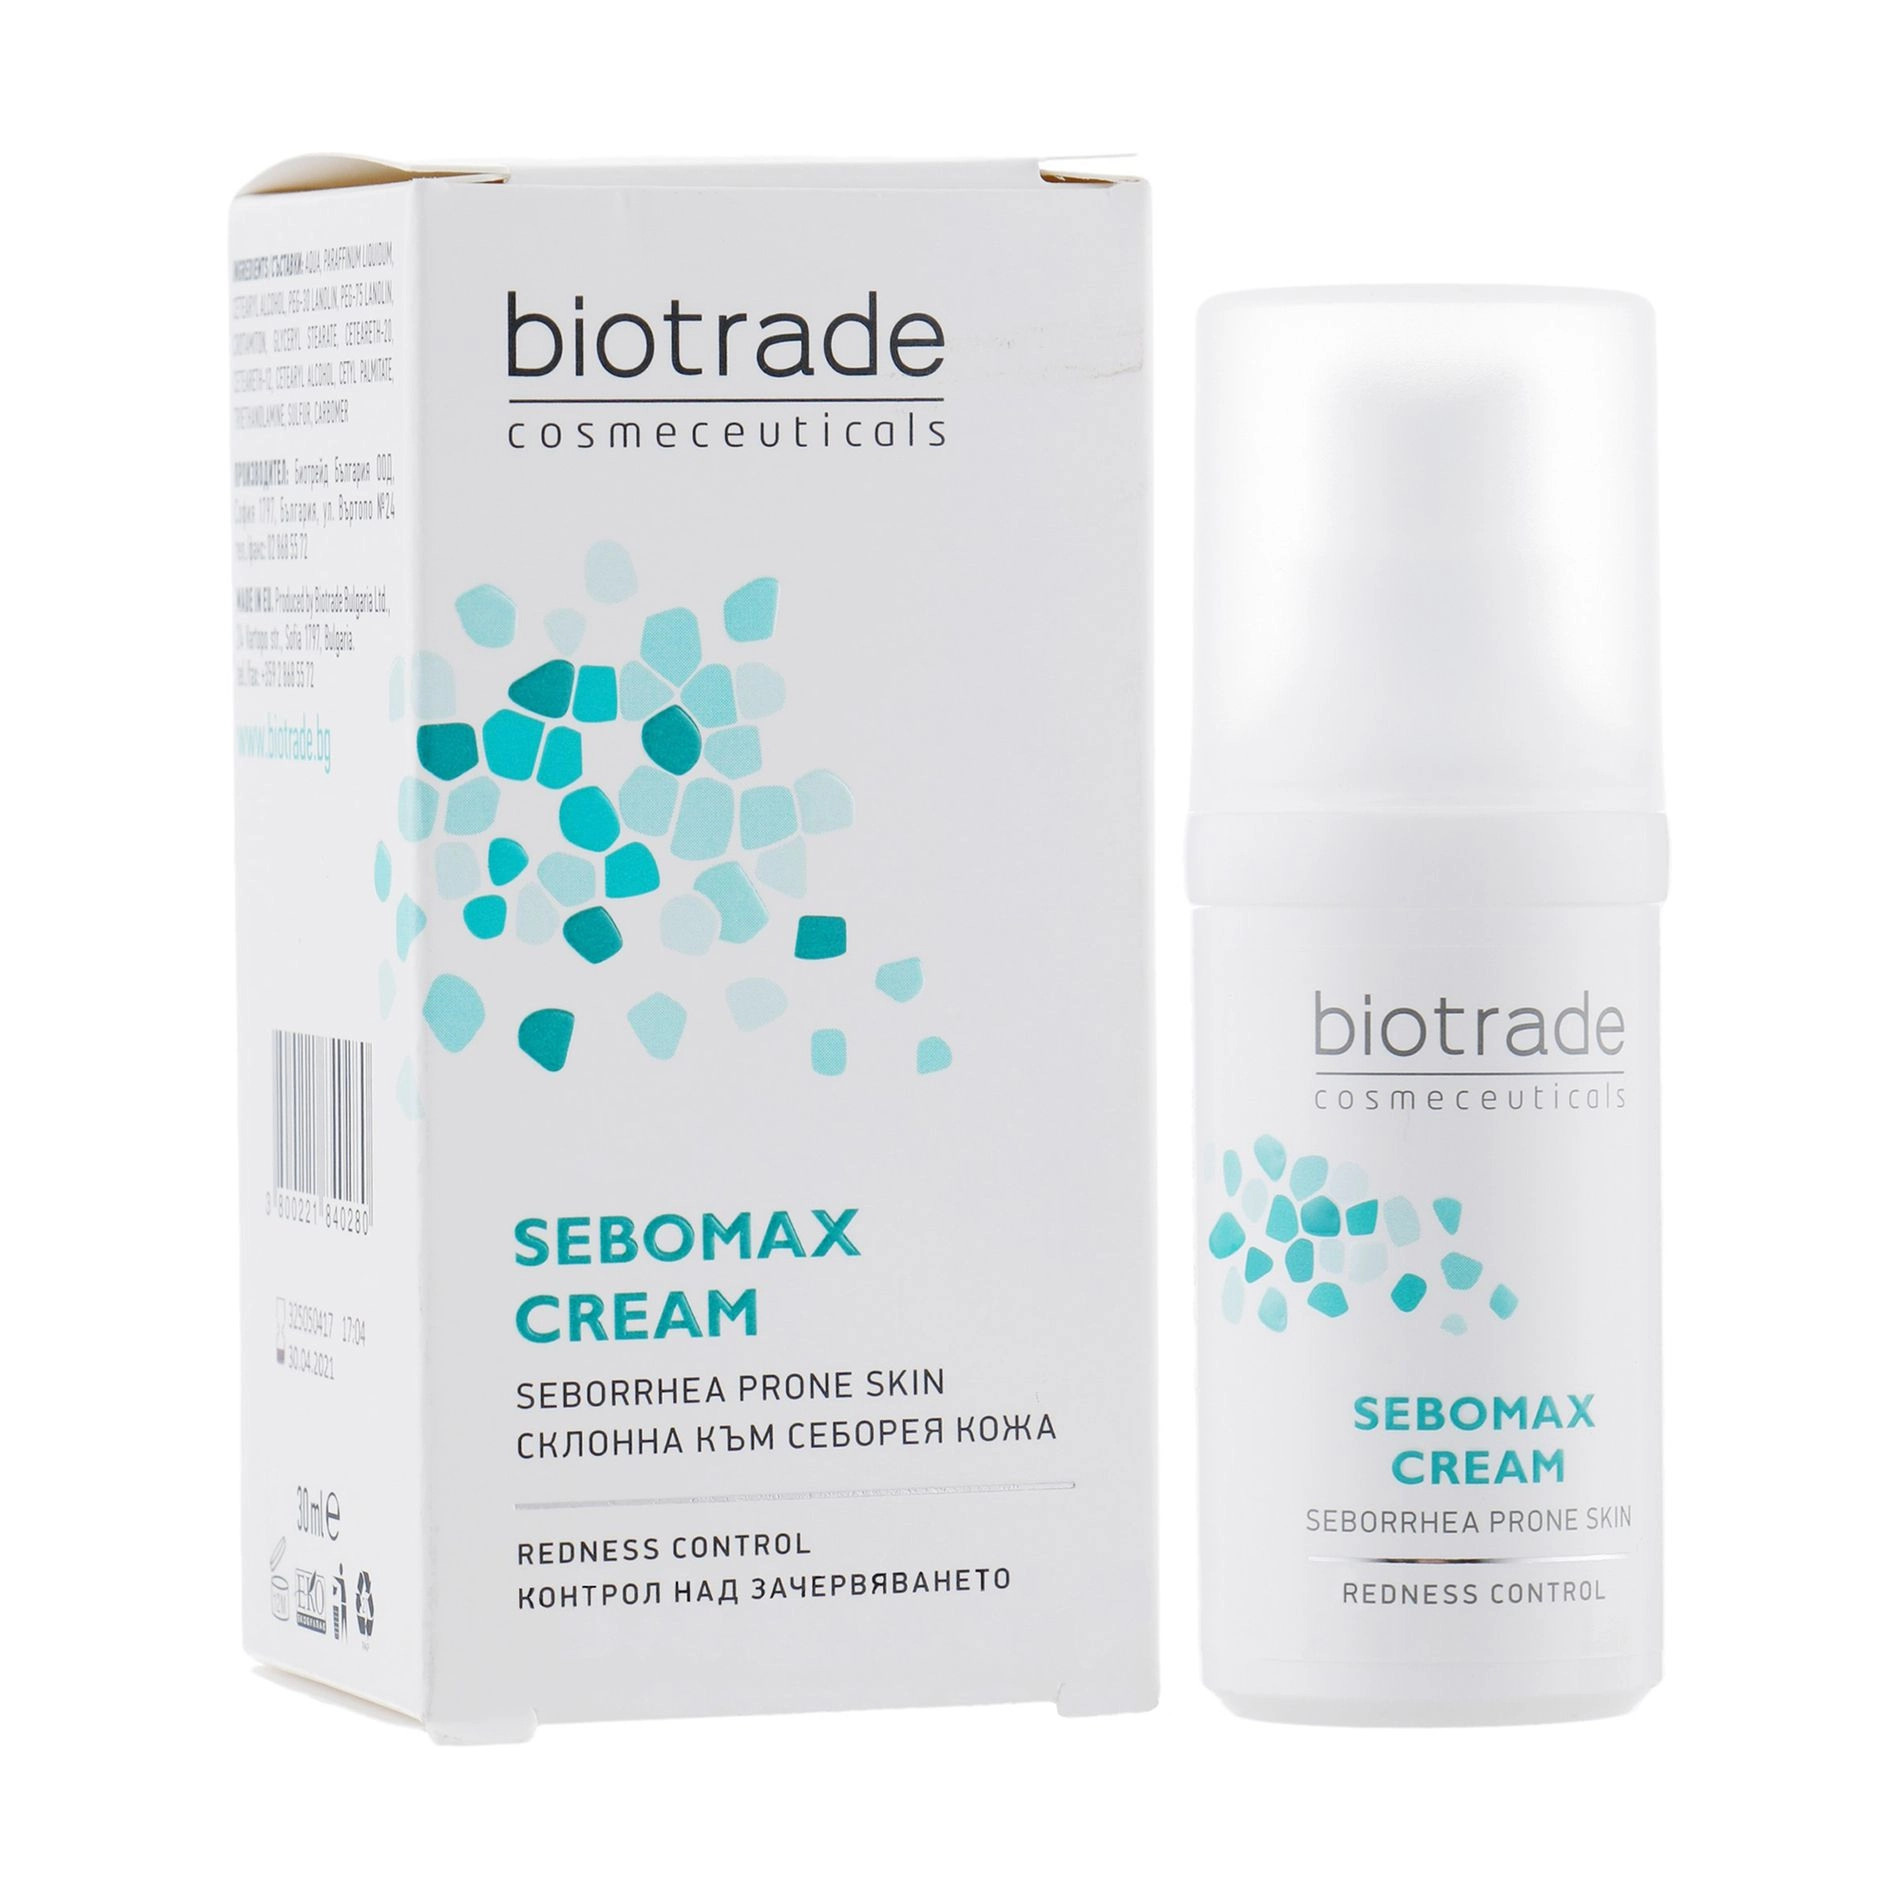 Успокаивающий крем для жирной, раздраженной, шелушащейся кожи, при себорейном дермате и демодекозе - Biotrade Sebomax Cream, 30 мл - фото N2